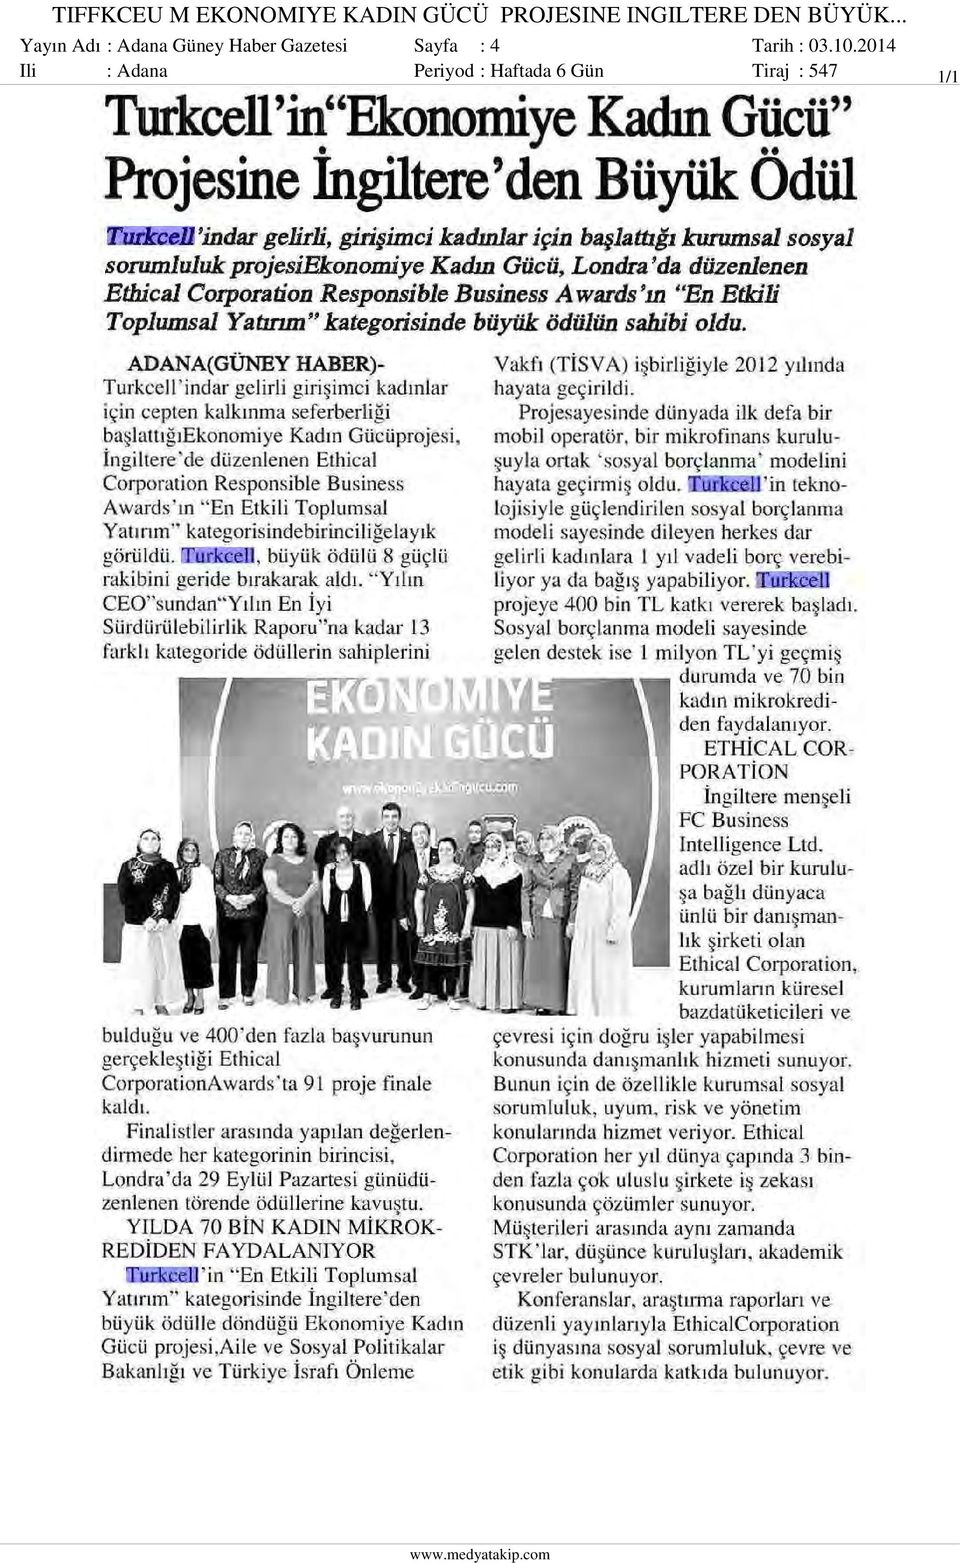 .. Yayın Adı : Adana Güney Haber Gazetesi